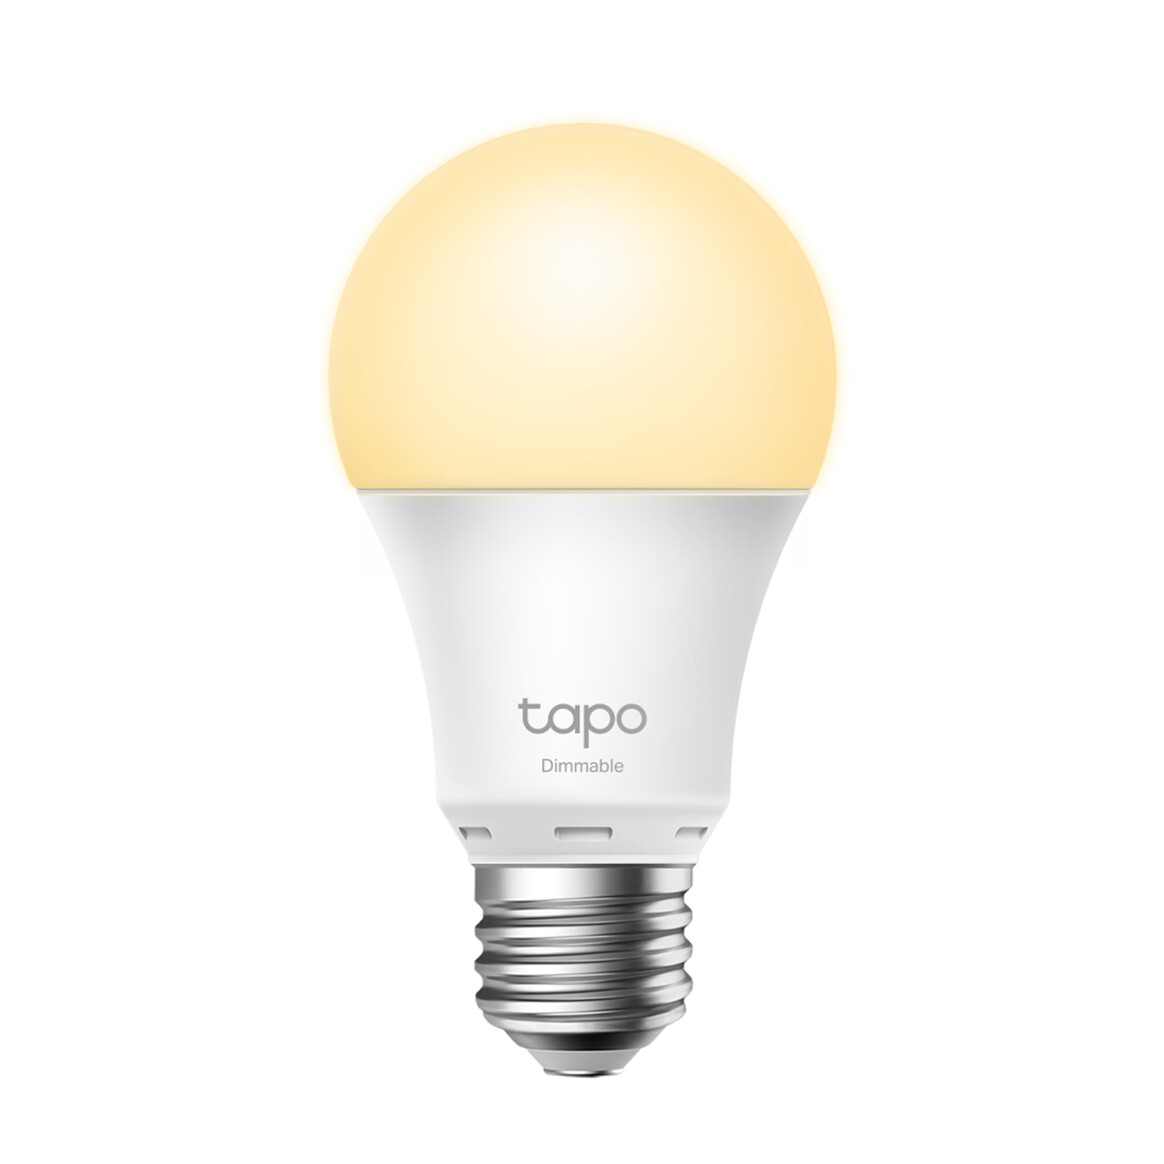 <h1>TP-Link Tapo L510E, Smart Wi-Fi Light Bulb</h1>